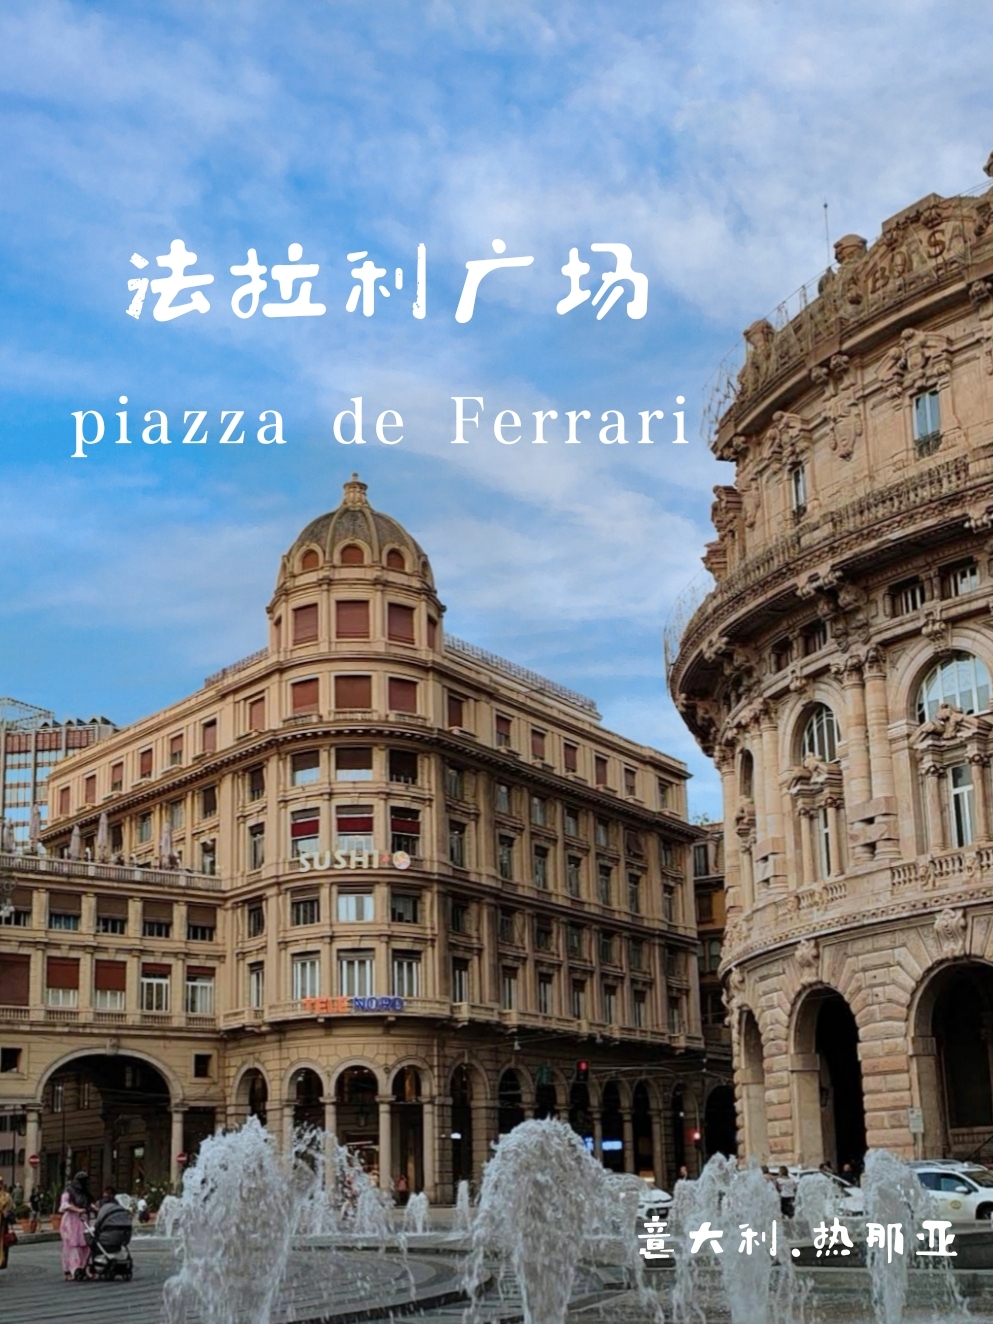 法拉利广场：位于热那亚市街中心，周边都是19世纪经典老建筑